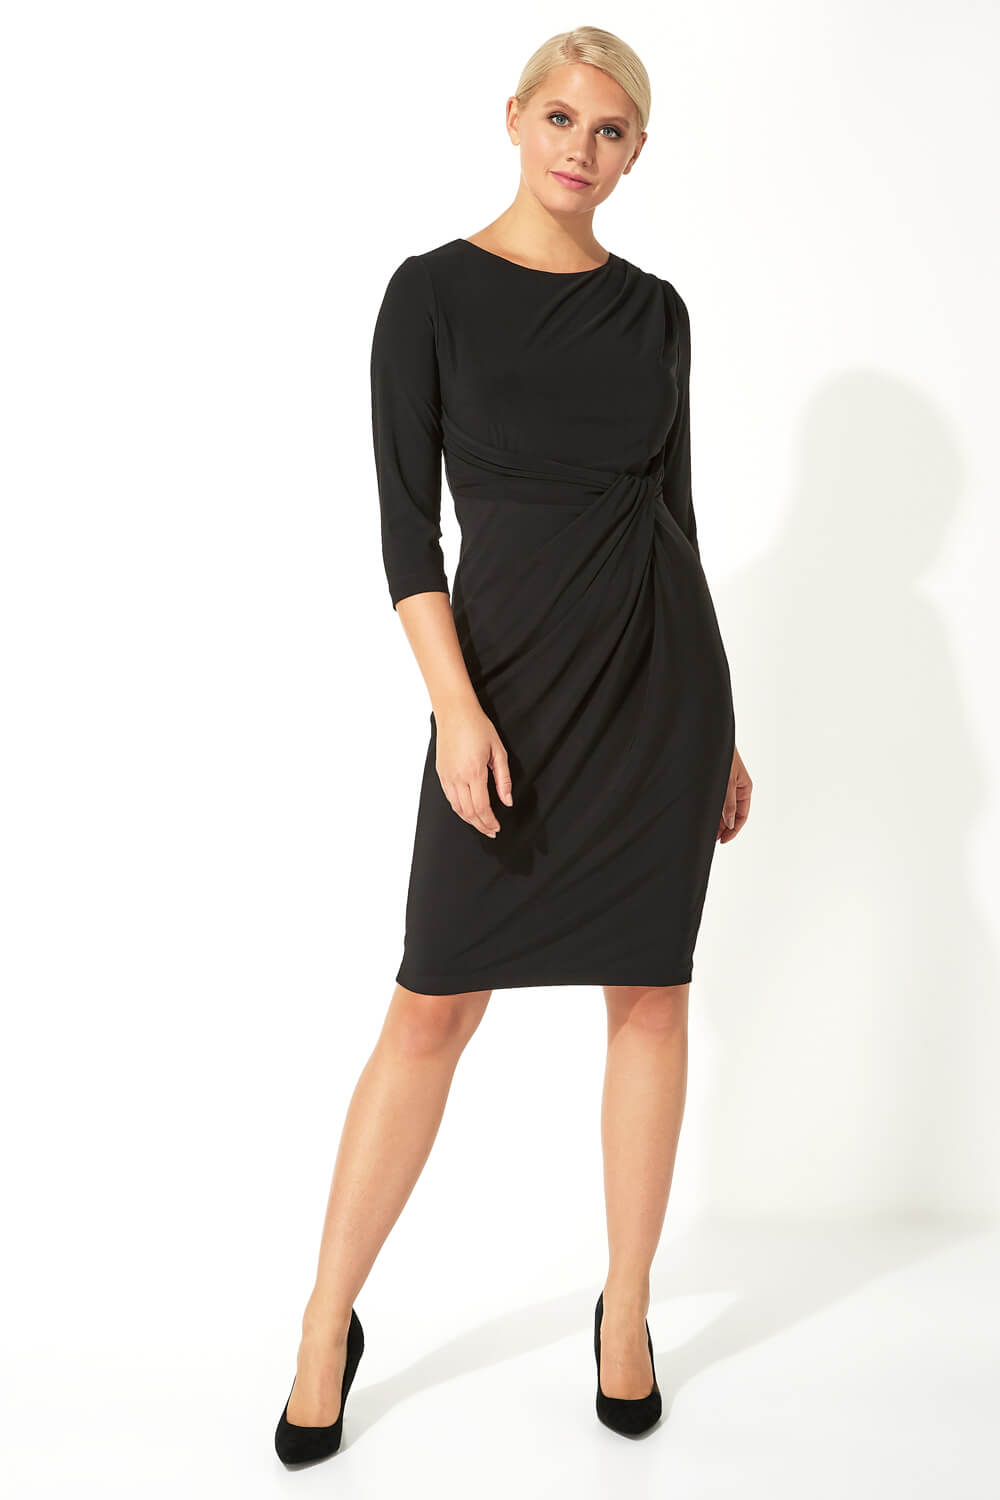 Black 3/4 Sleeve Twist Waist Dress, Image 2 of 5